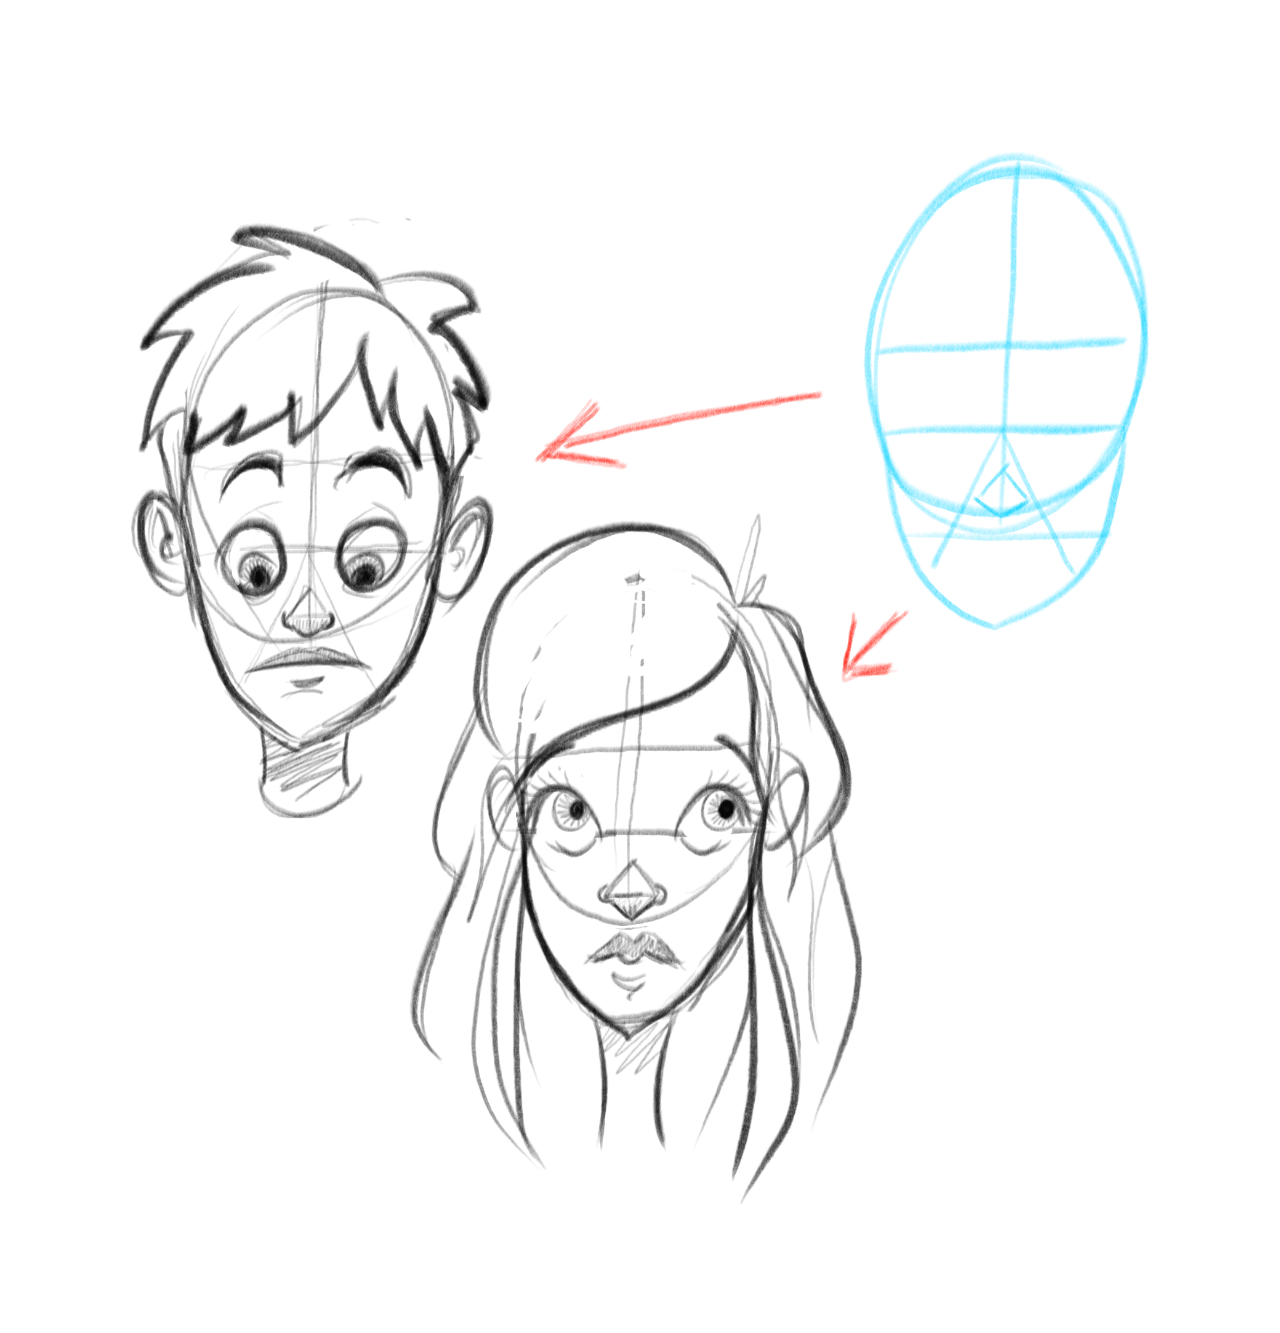 Un petit tutoriel pour dessiner un visage de fille